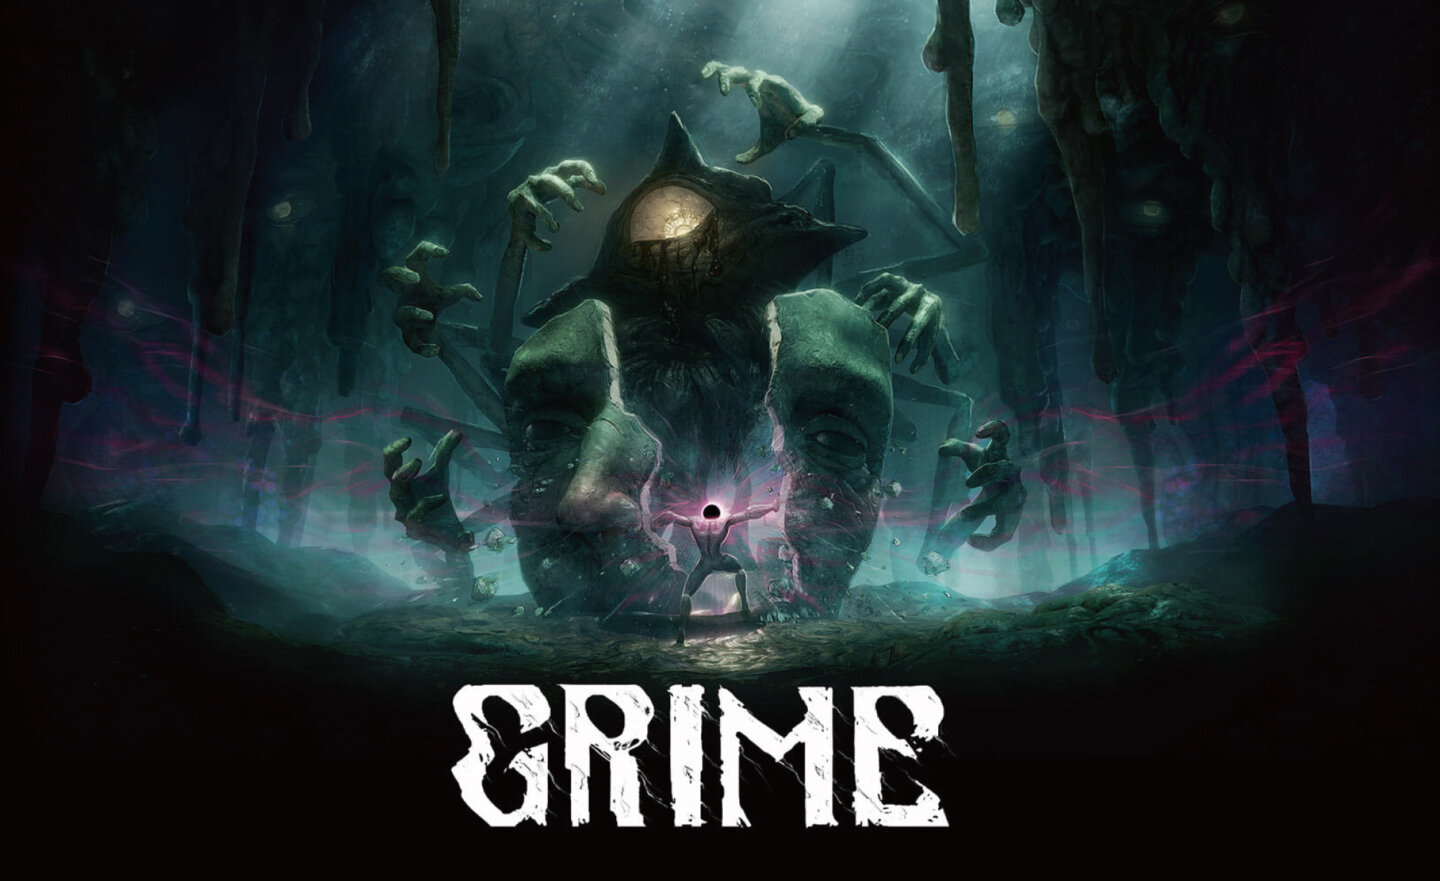 【限時免費】動作冒險 RPG 遊戲《GRIME》放送中，2023 年 7 月 13 日晚上 11:00 截止